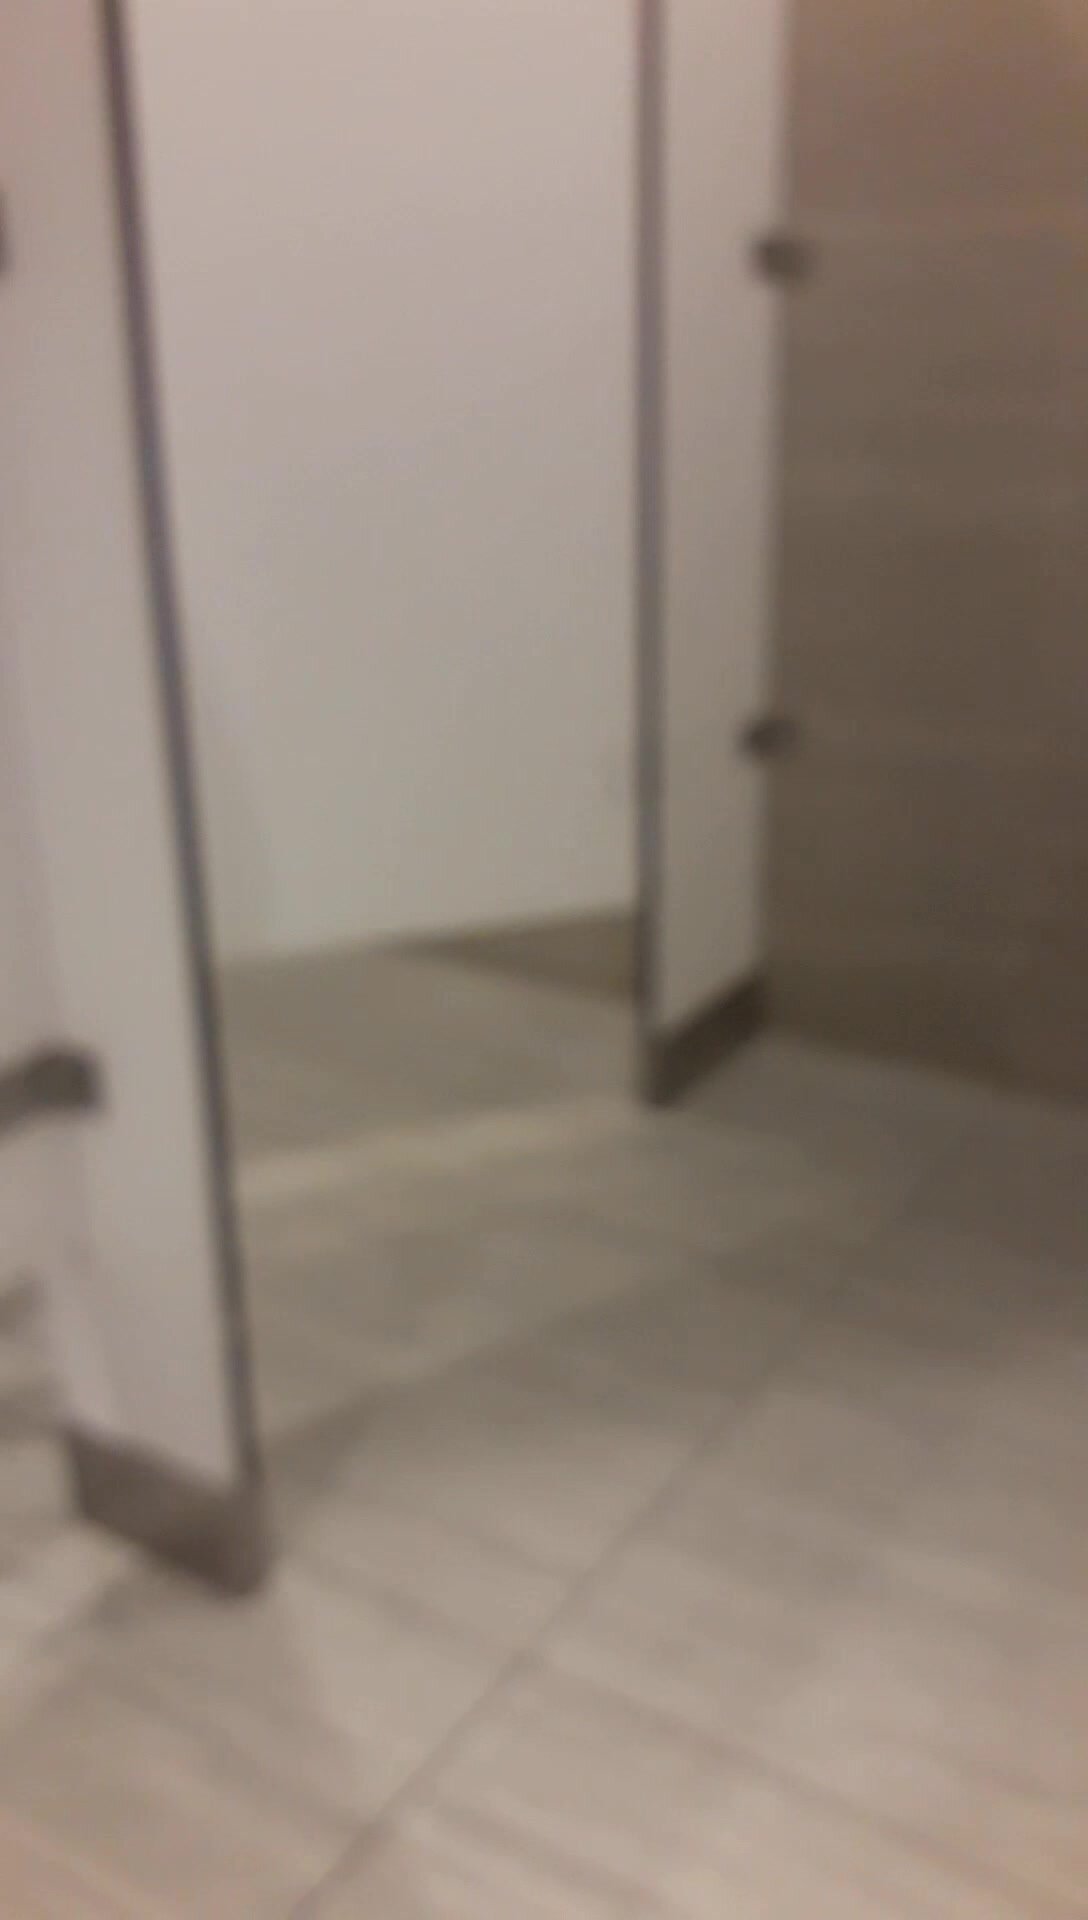 Strangers Opened The Public Toilet Door - video 12